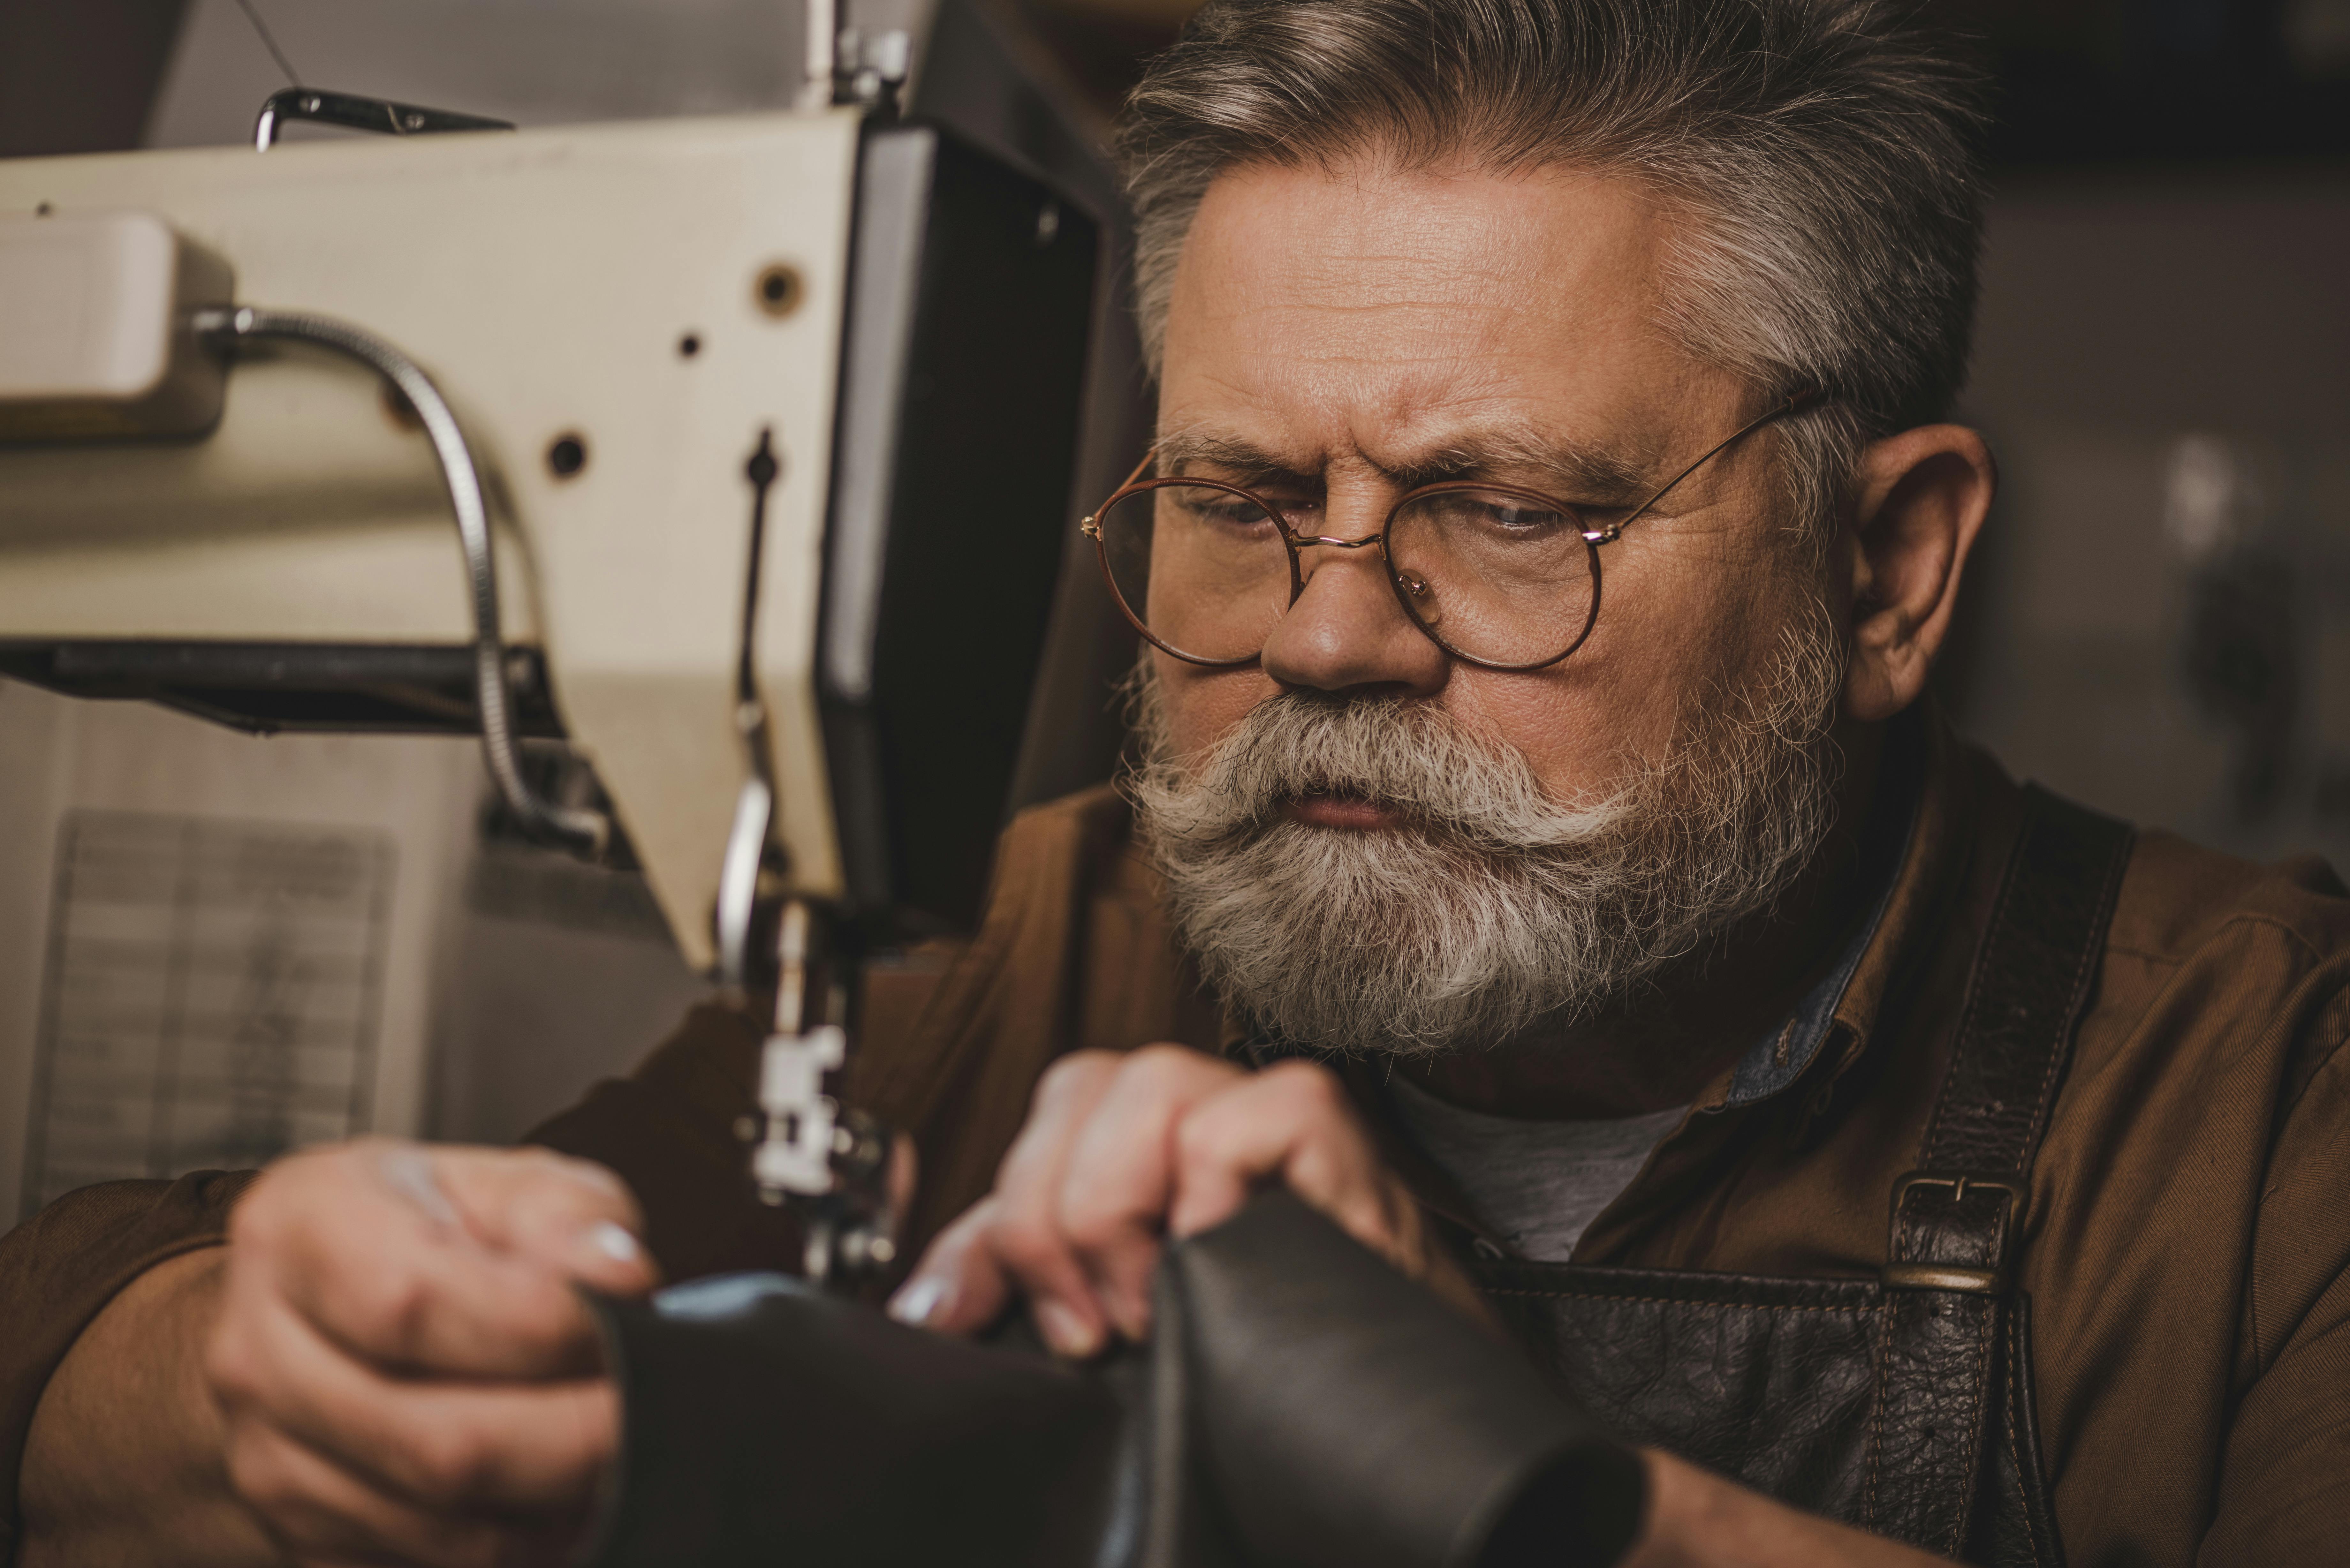  man looking close up at sewing machine